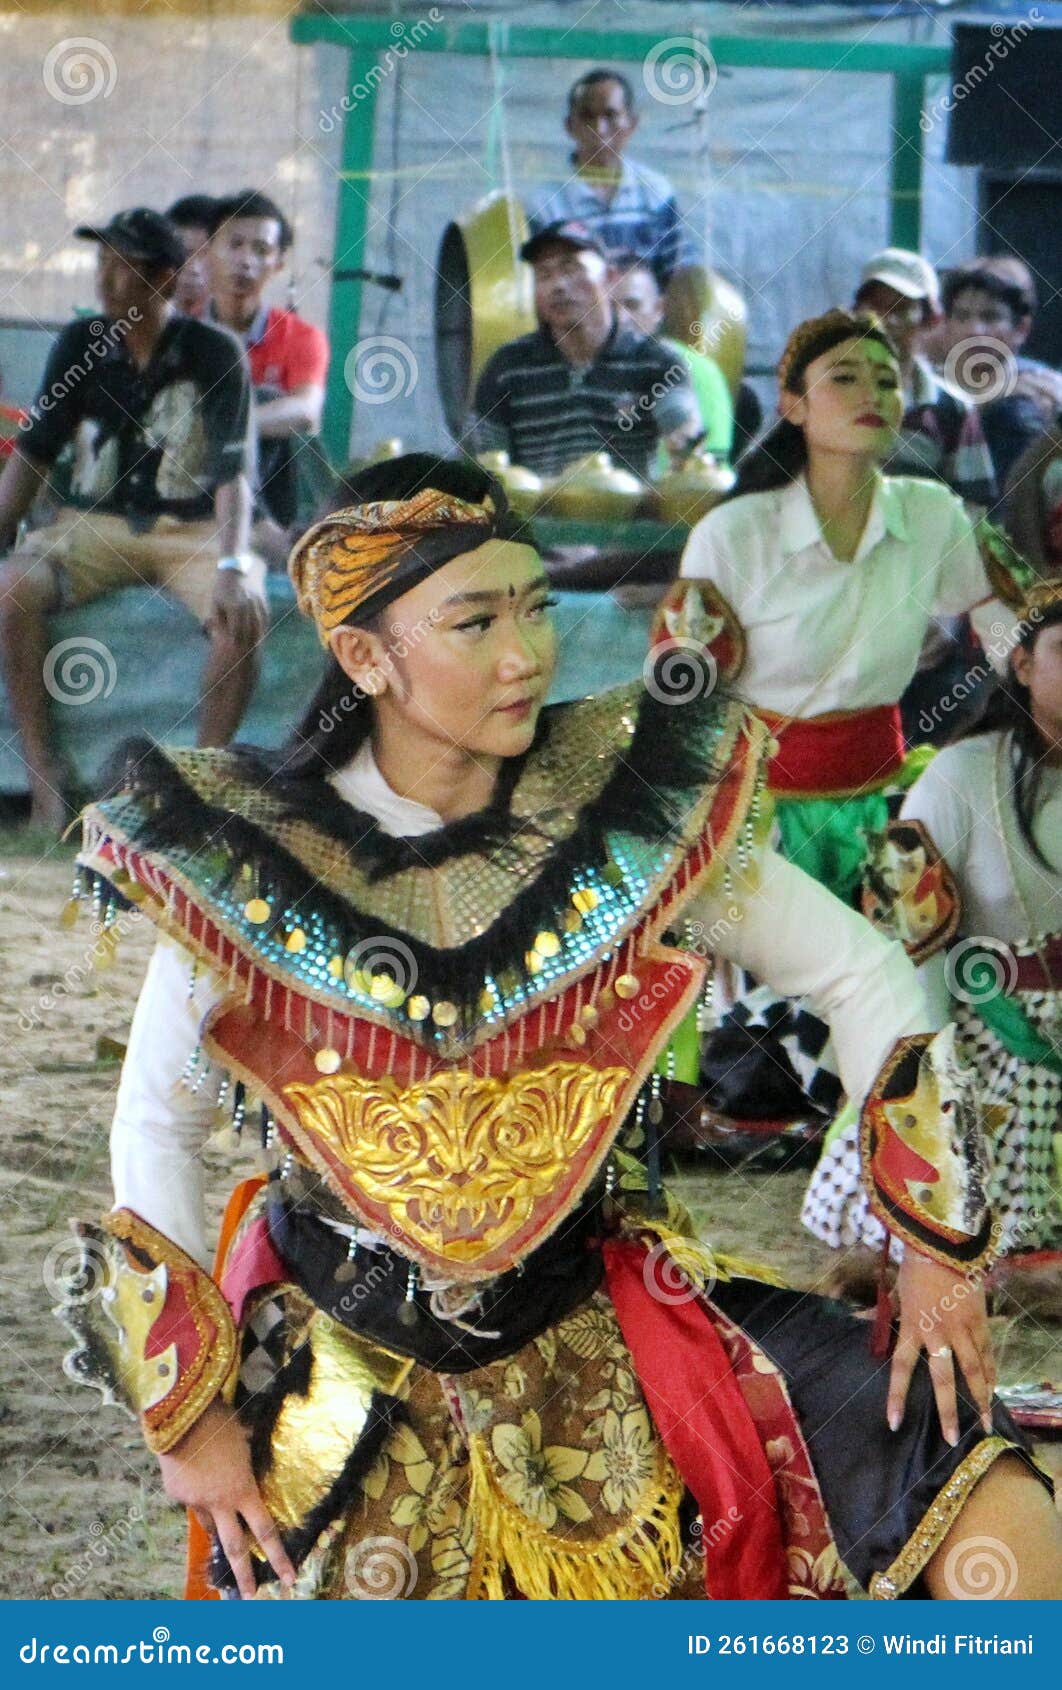 Indonesian Traditional Art Called Kuda Kepang Or Kuda Lumping Editorial